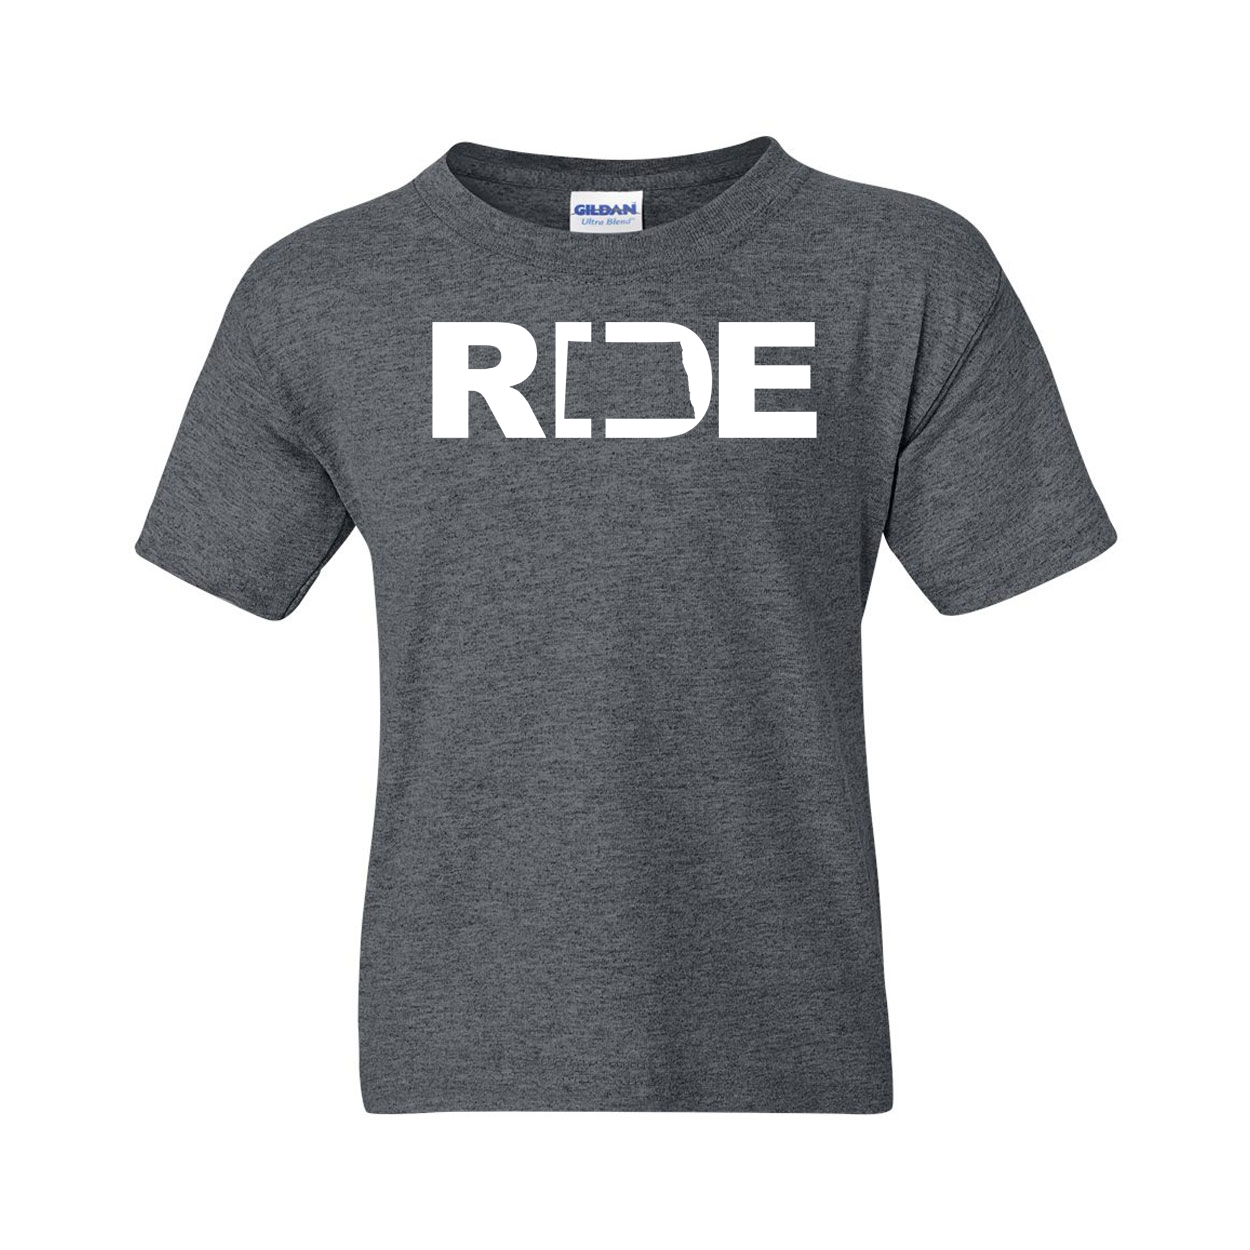 Ride North Dakota Classic Youth T-Shirt Dark Heather Gray (White Logo)